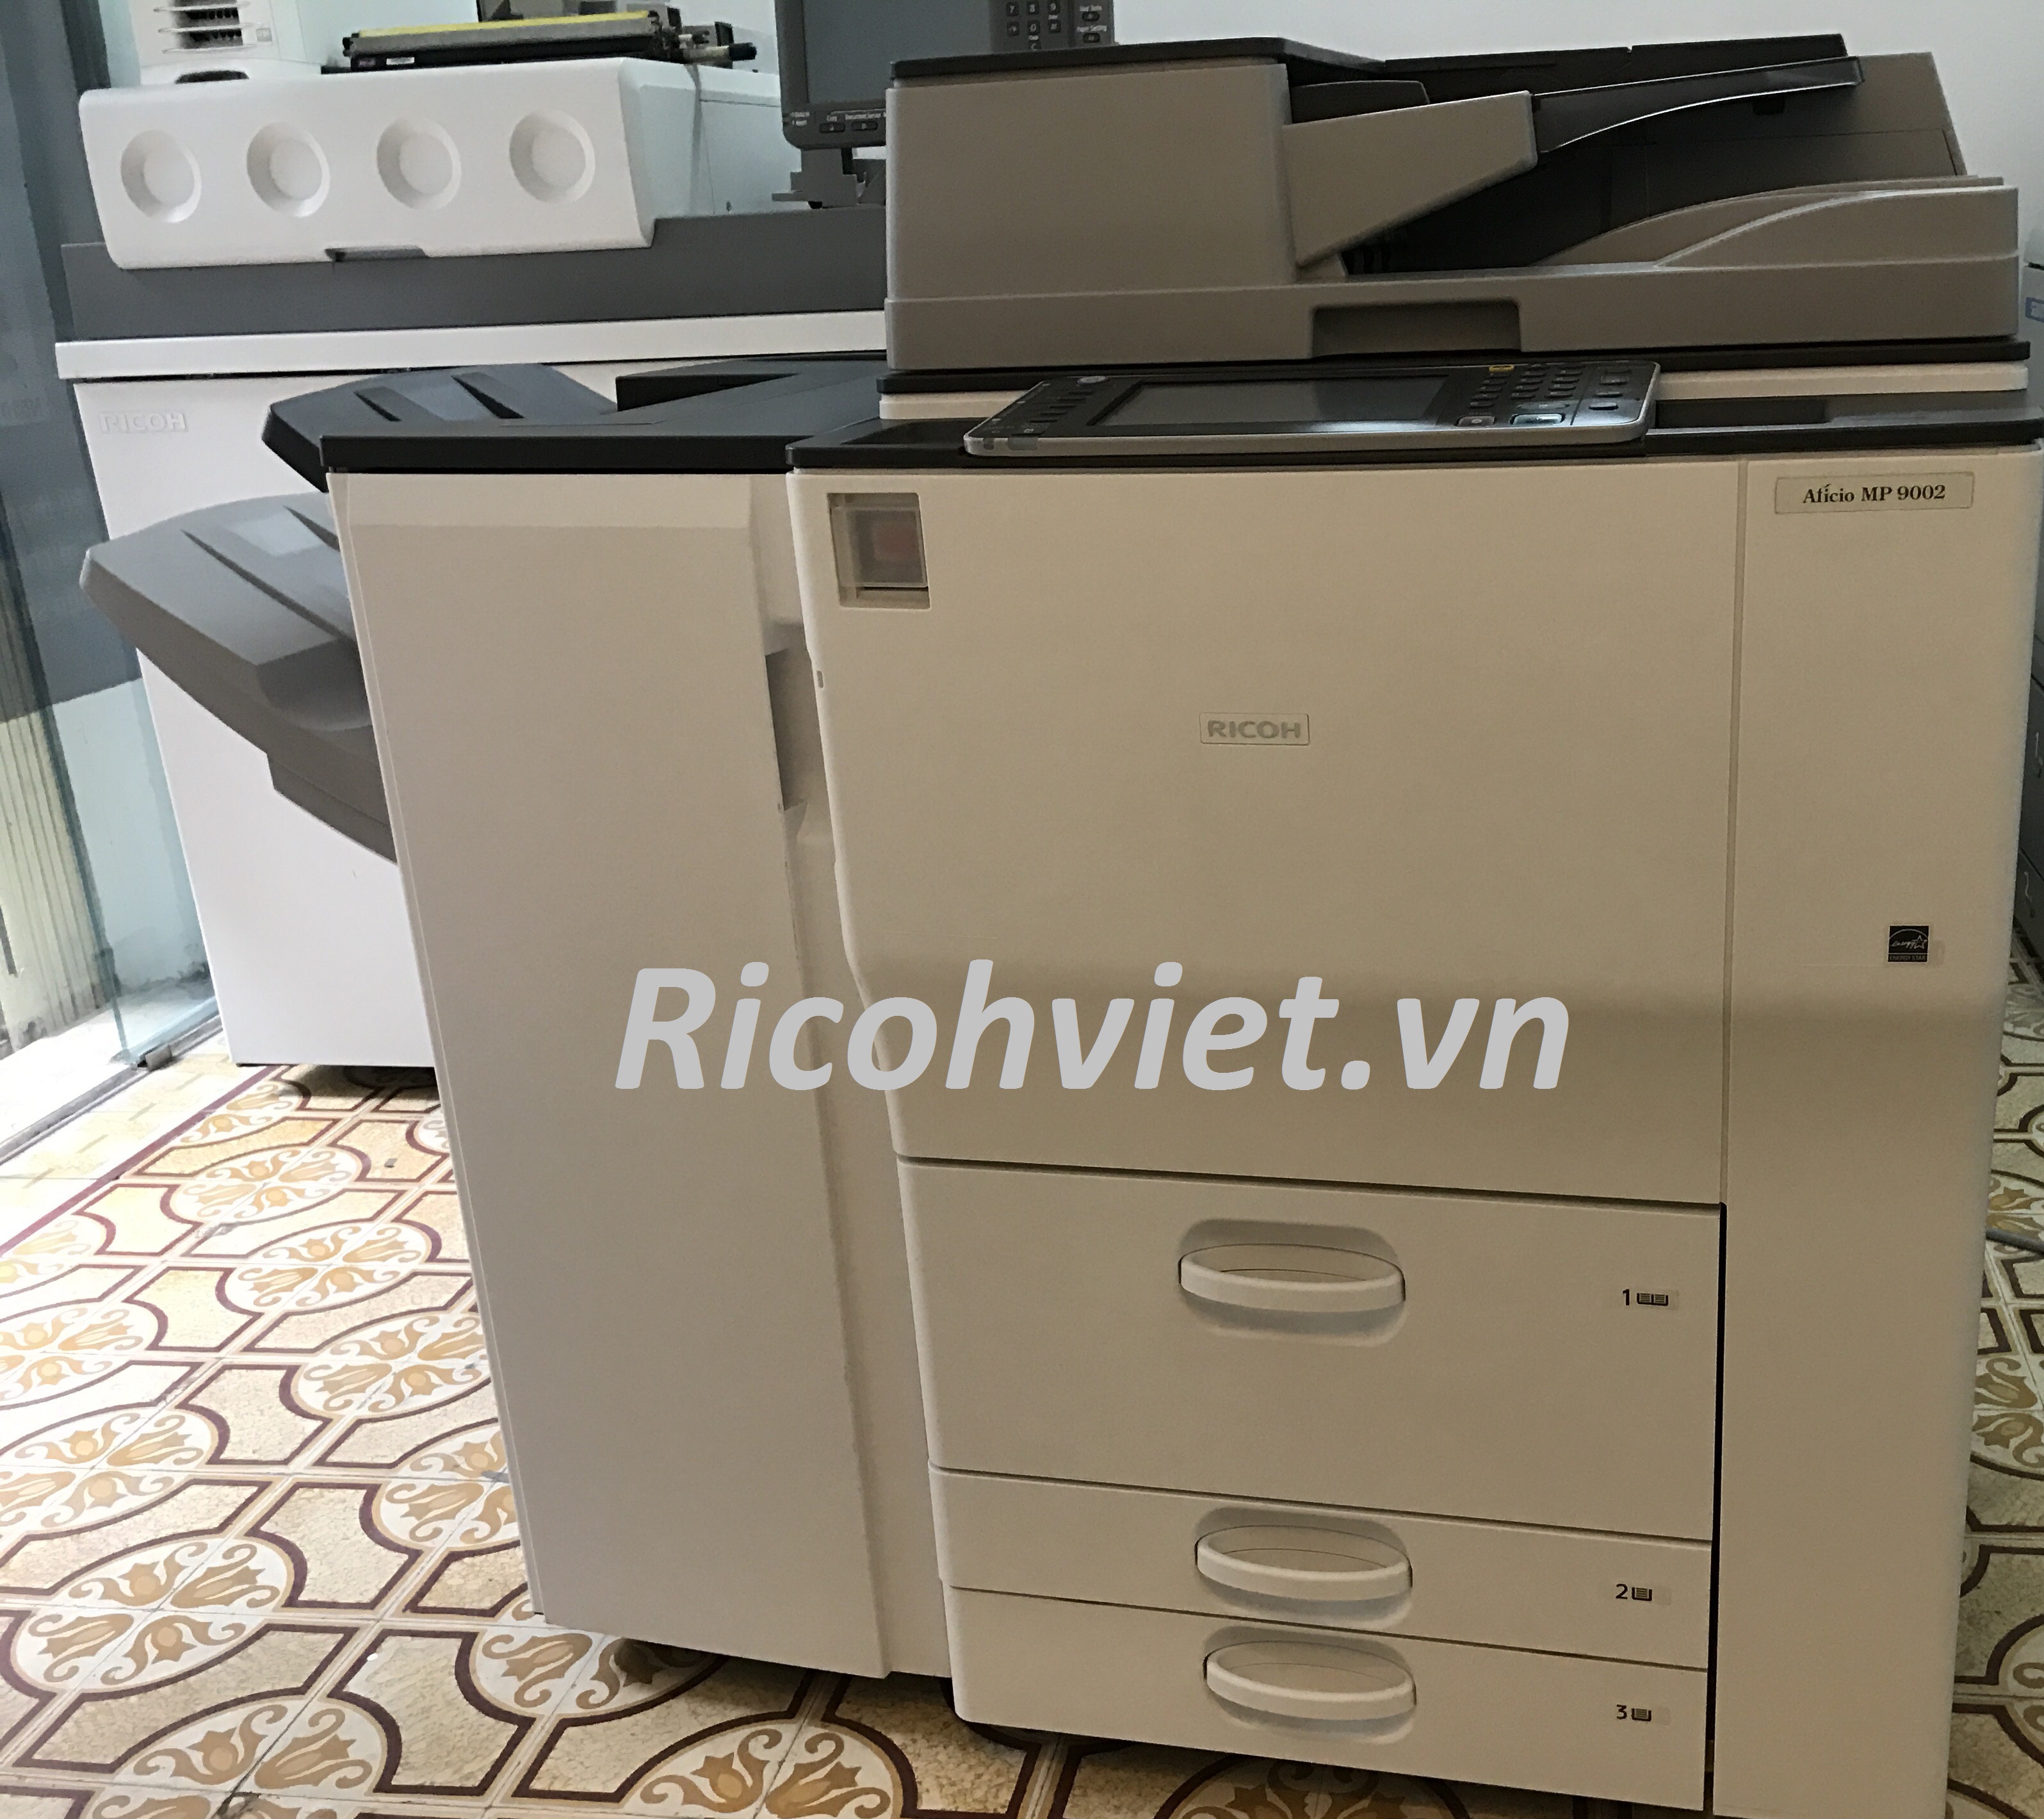 Thuê máy photocopy ở đâu rẻ nhất?